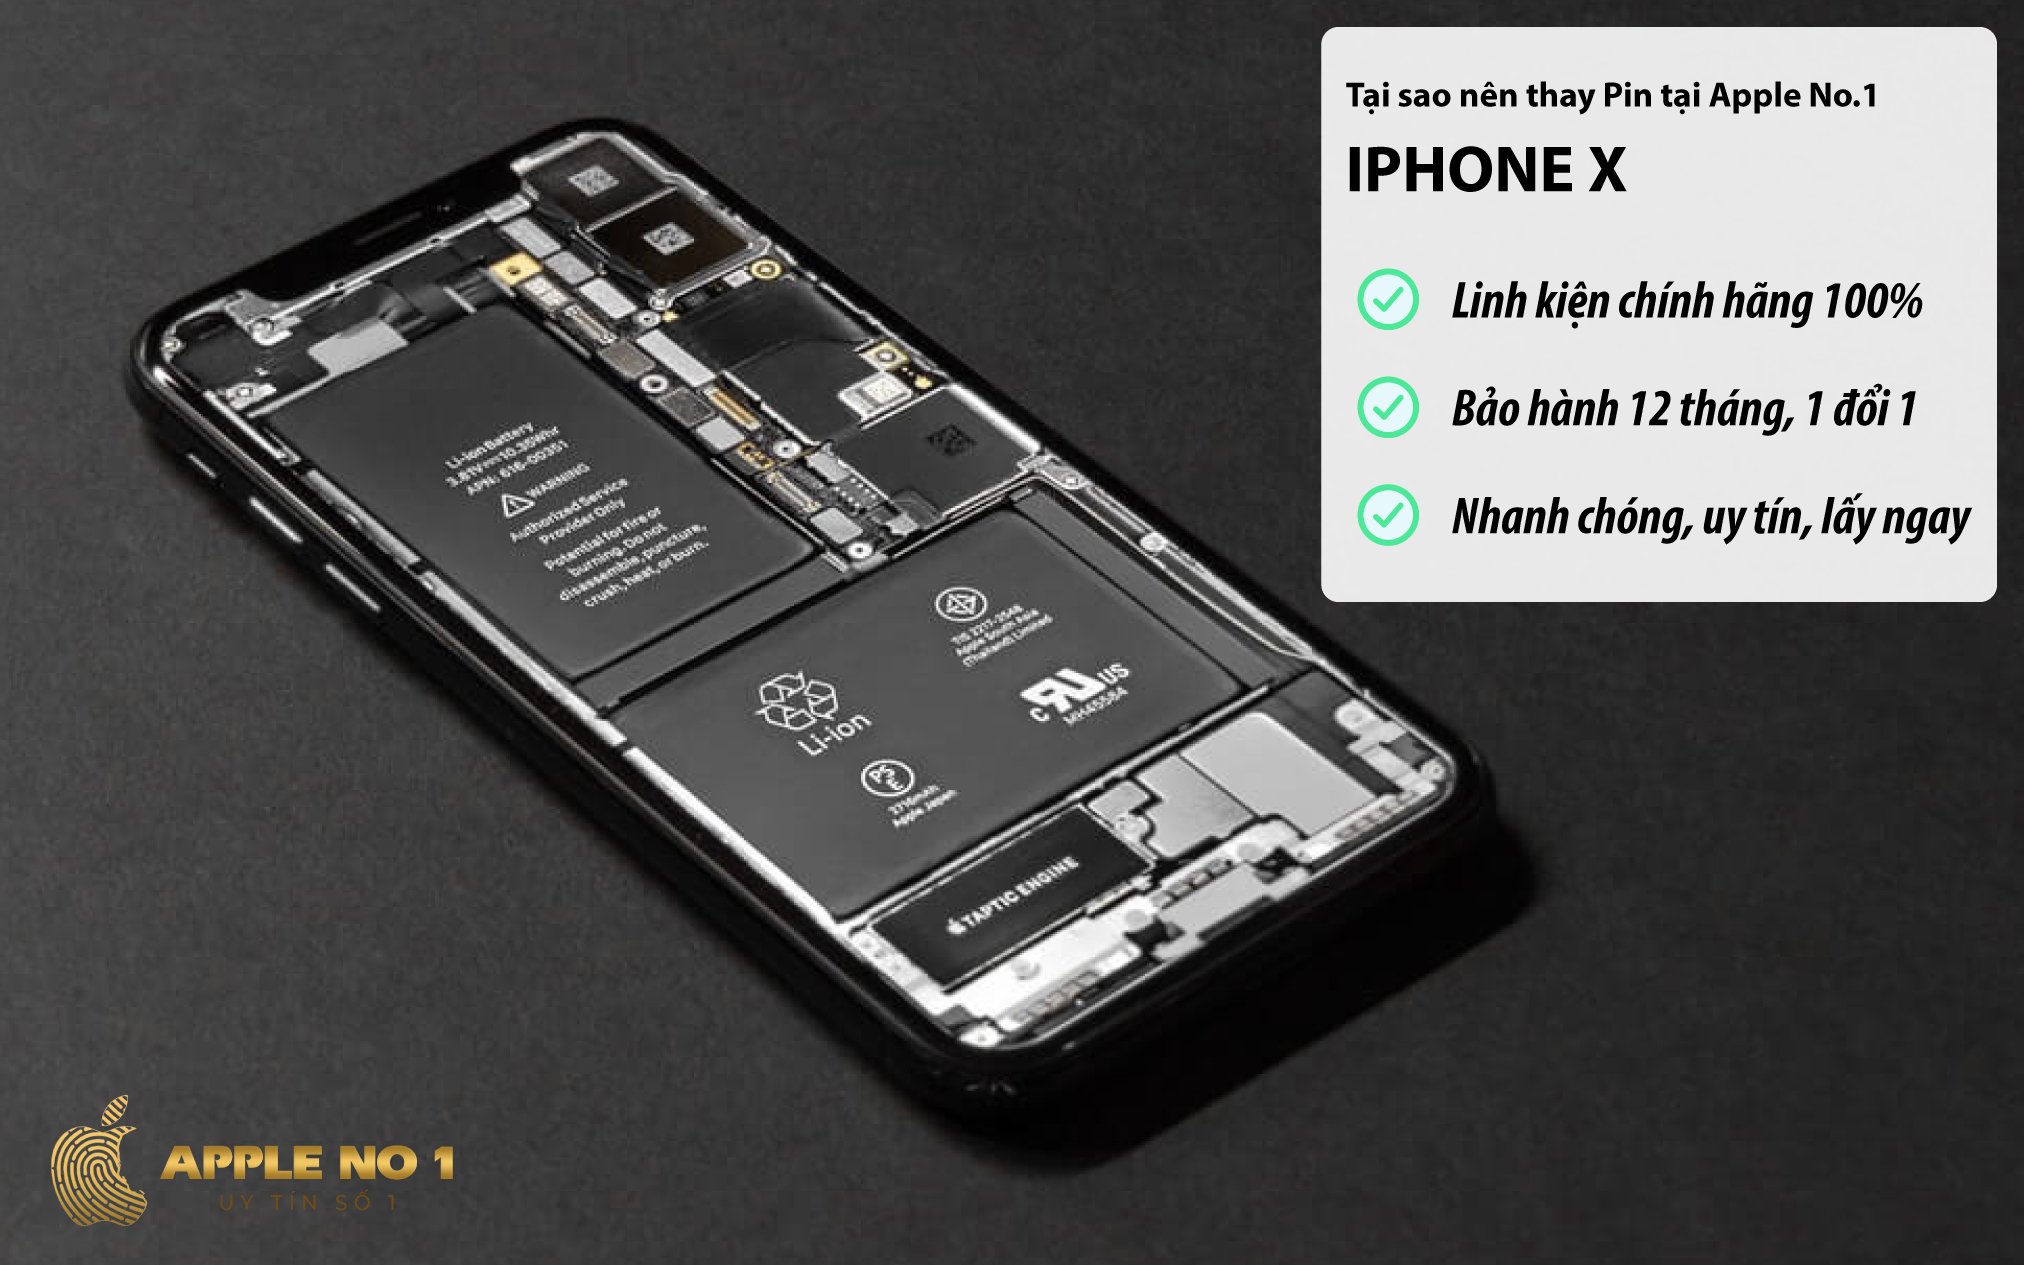 Thay pin iphone x chính hãng tại Apple No.1